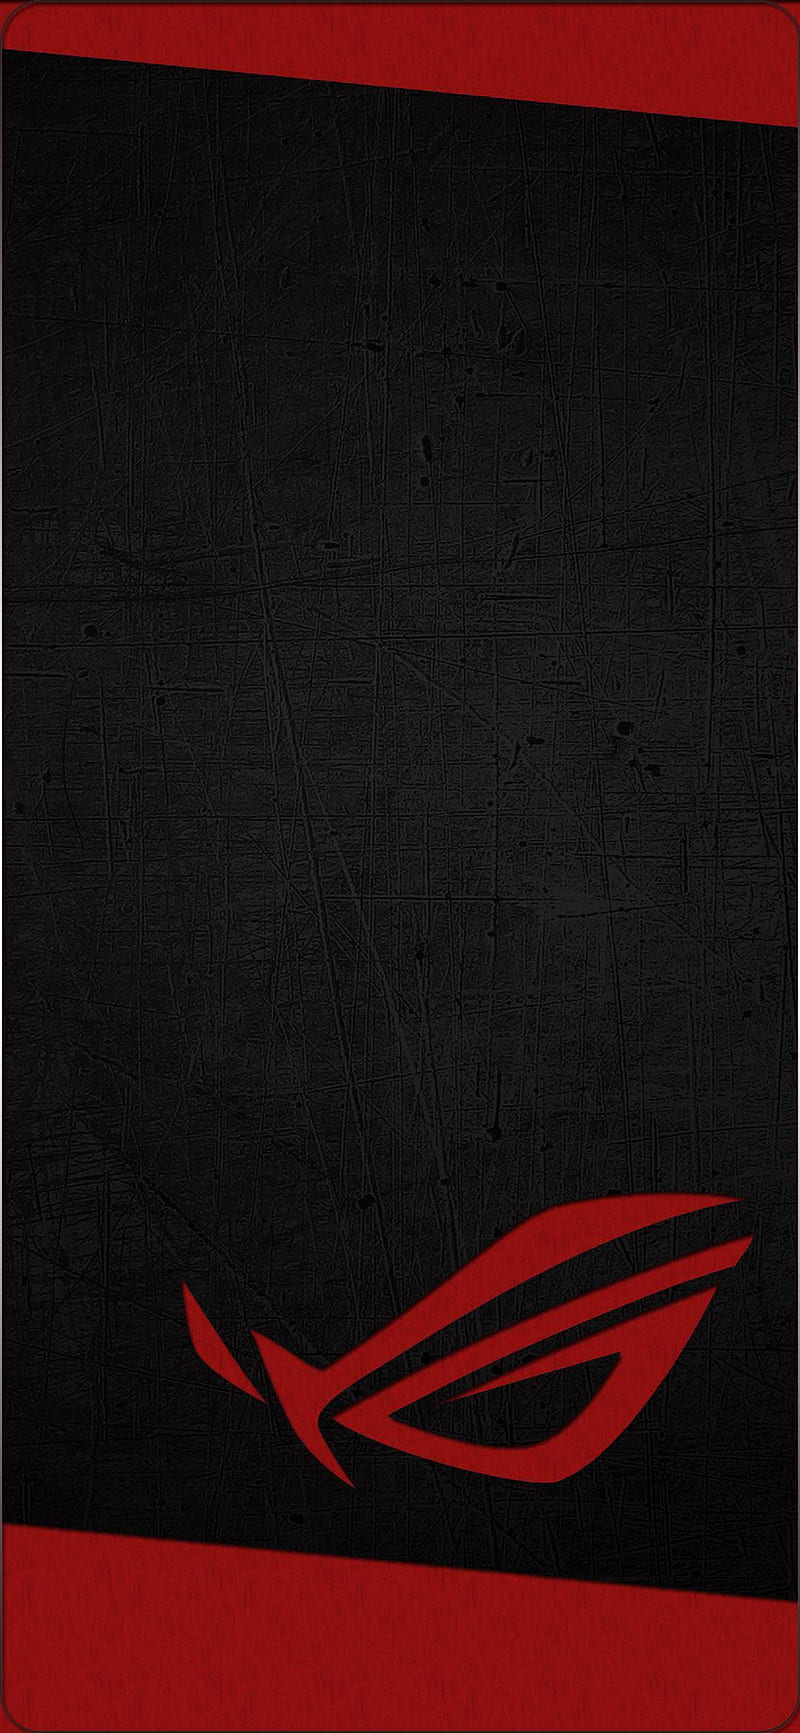 Asus ROG 007, rog logo, HD phone wallpaper